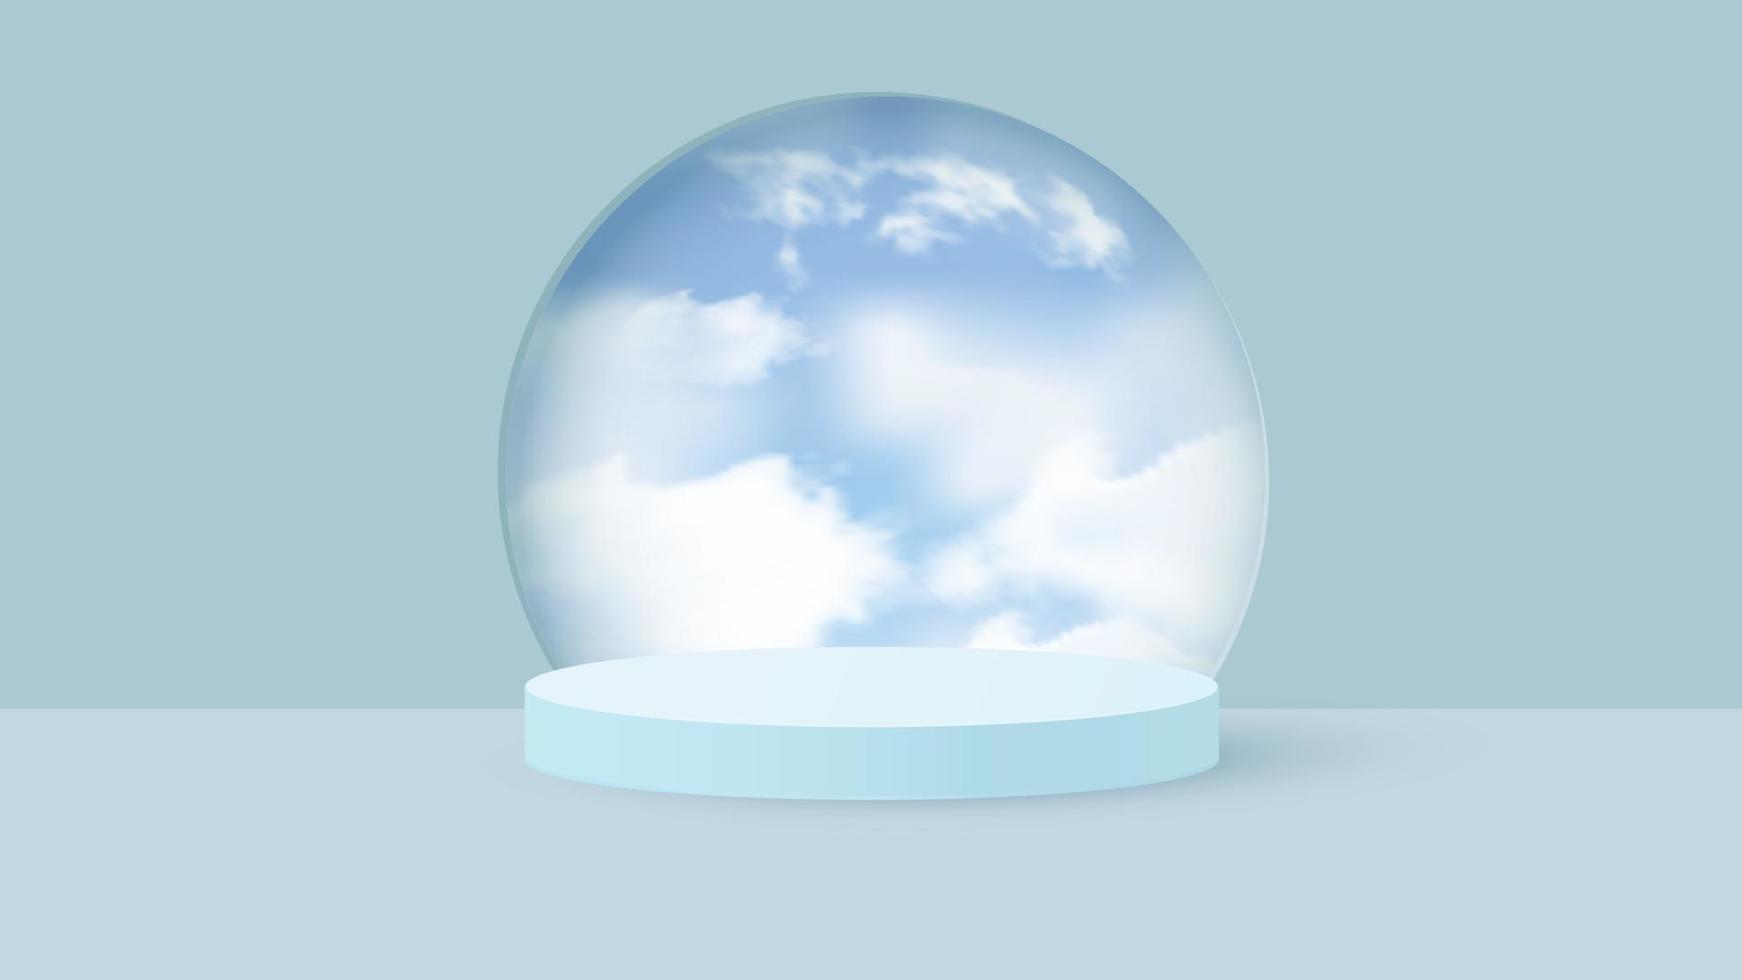 vector de fondo 3d representación azul con podio y escena nublada mínima. fondo de visualización de producto mínimo de forma geométrica renderizada en 3d cielo azul nube pastel.vector ilustración